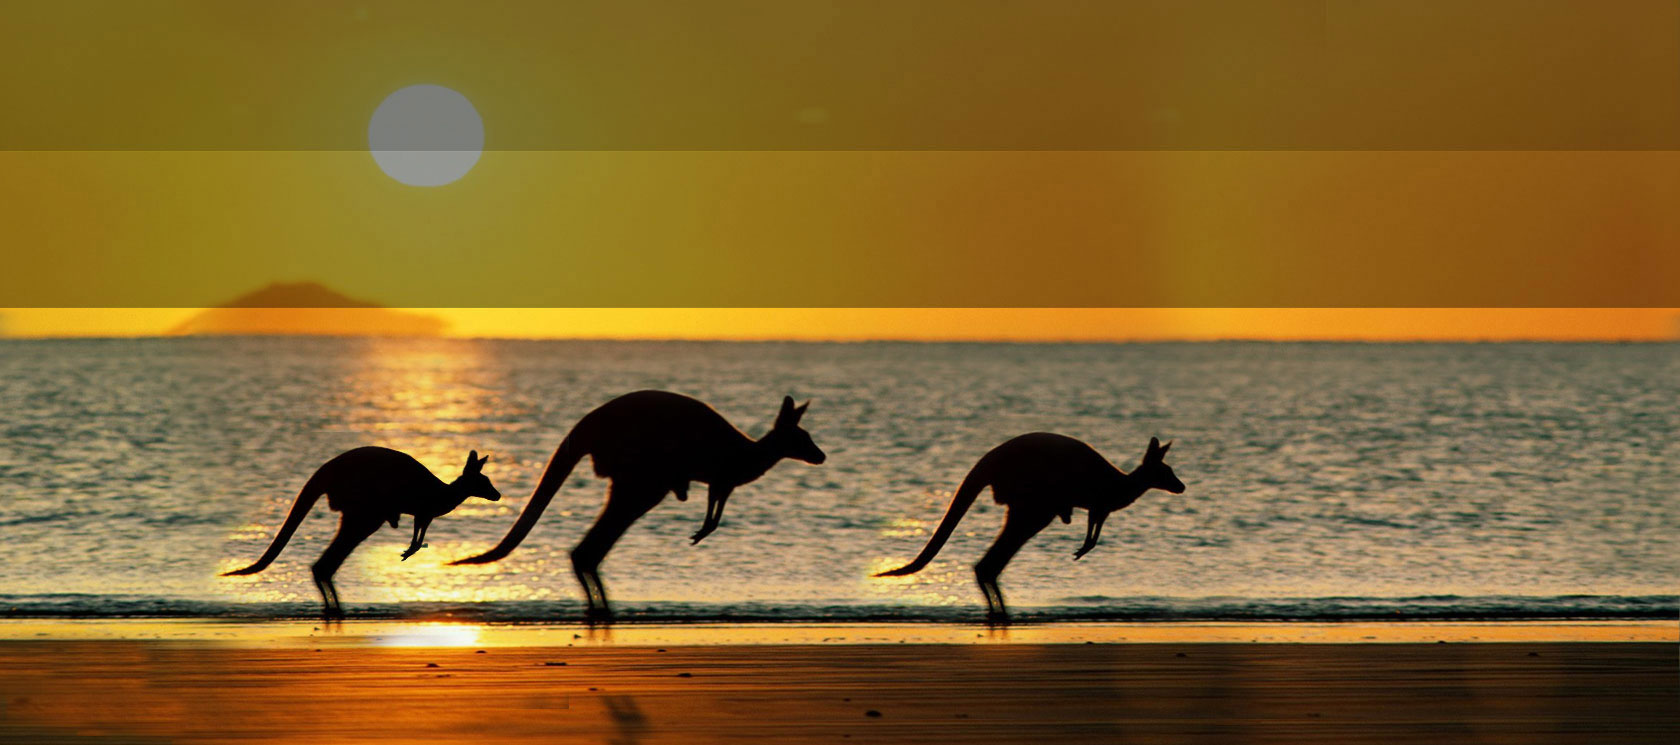 kangaroos running on a beach